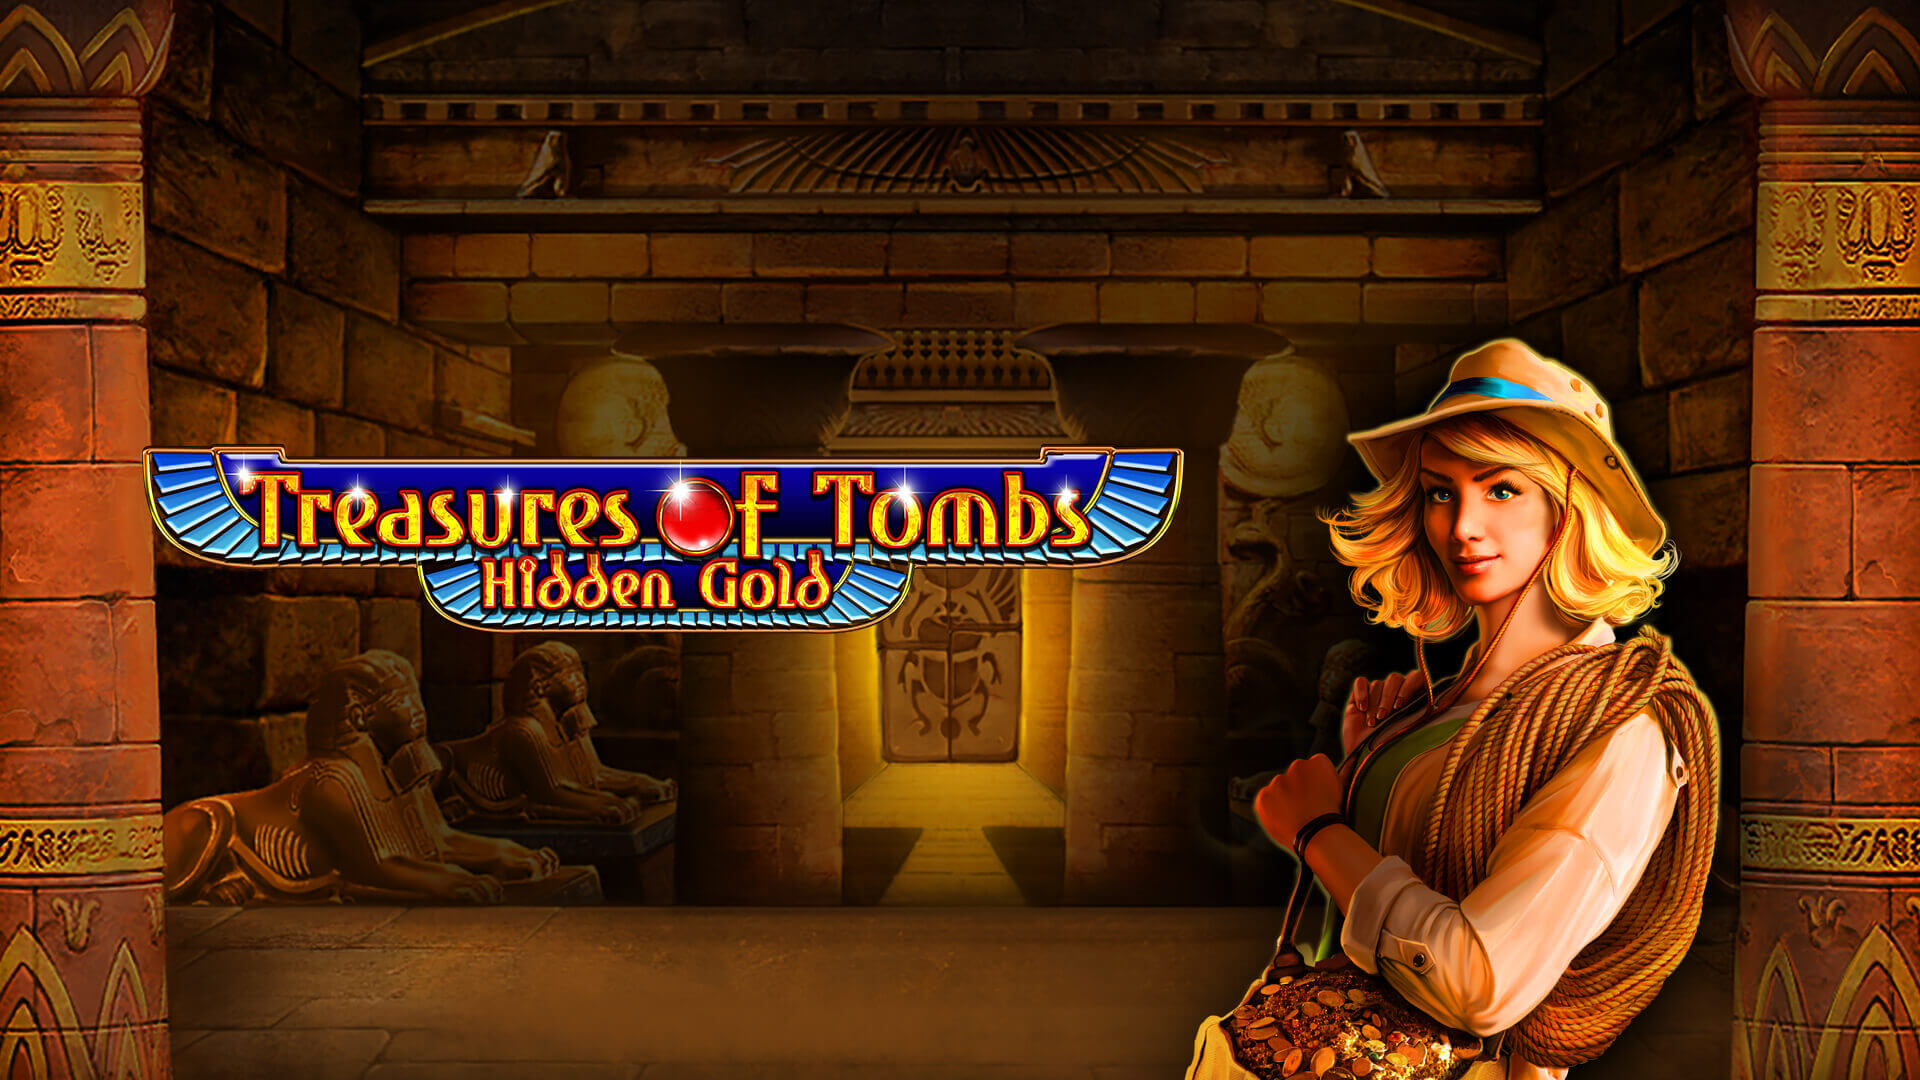 Treasures-of-Tombs-Hidden-Gold